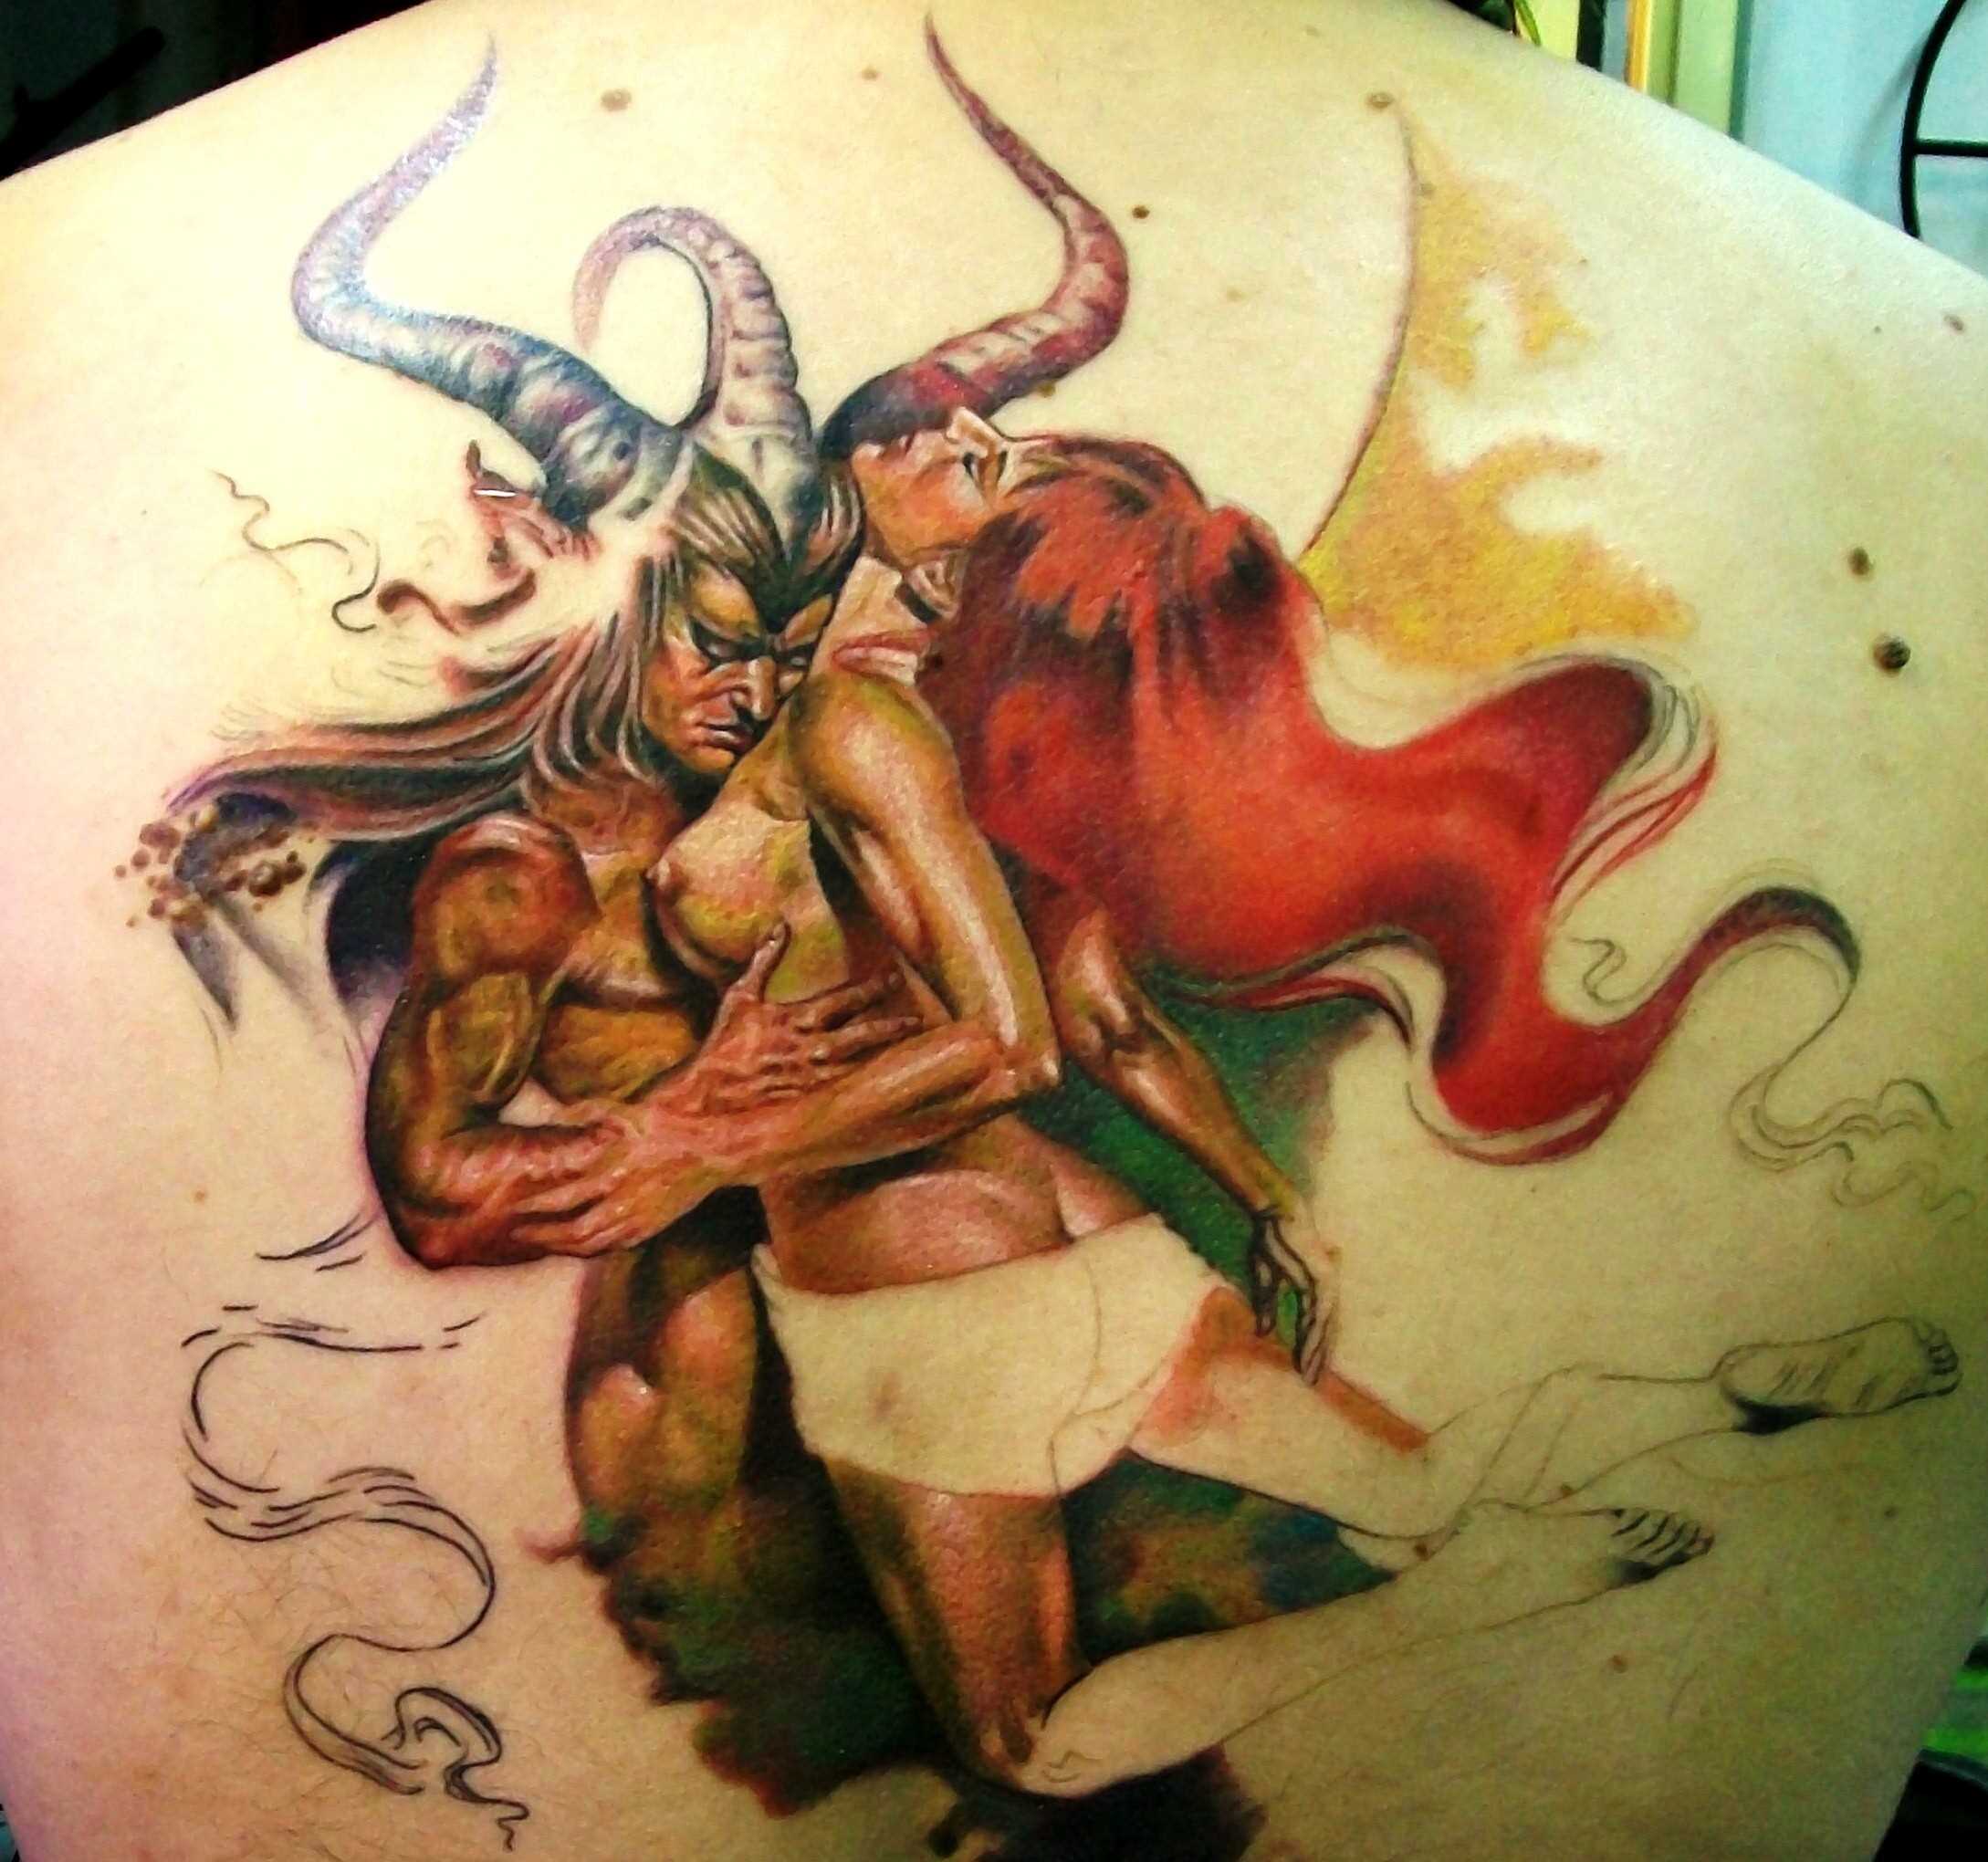 Linda a tatuagem nas costas do cara - o diabo e a menina